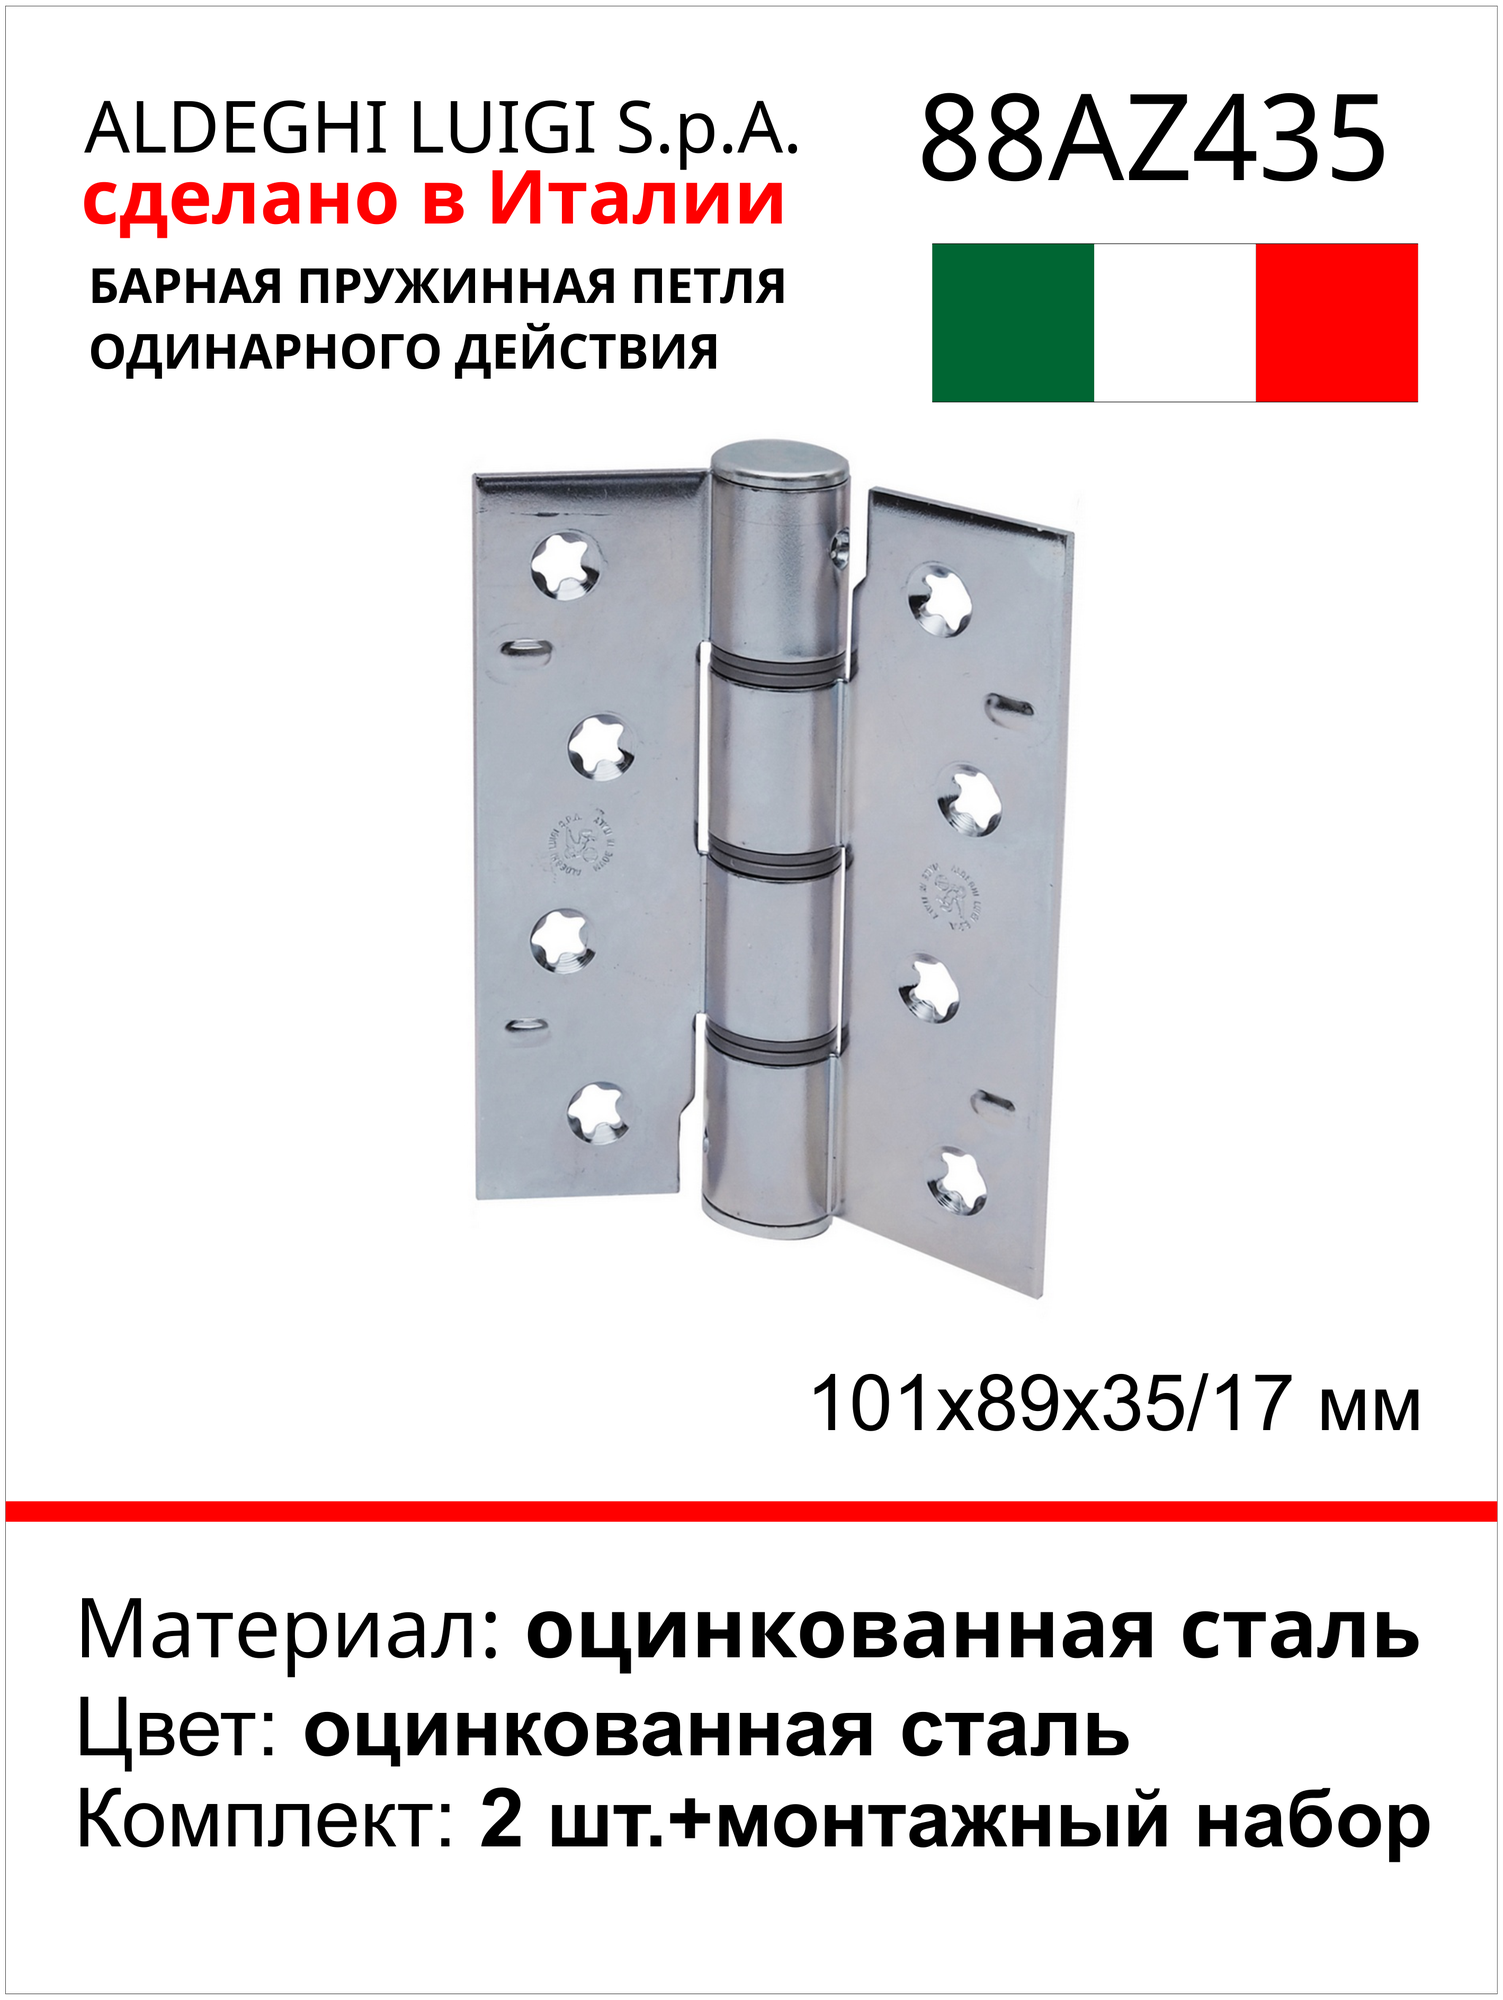 Барная пружинная петля одинарного действия ALDEGHI LUIGI SPA 101х89х35/17 мм, цвет: оцинкованная сталь, к-т: 2 шт + монтажный набор 88AZ435